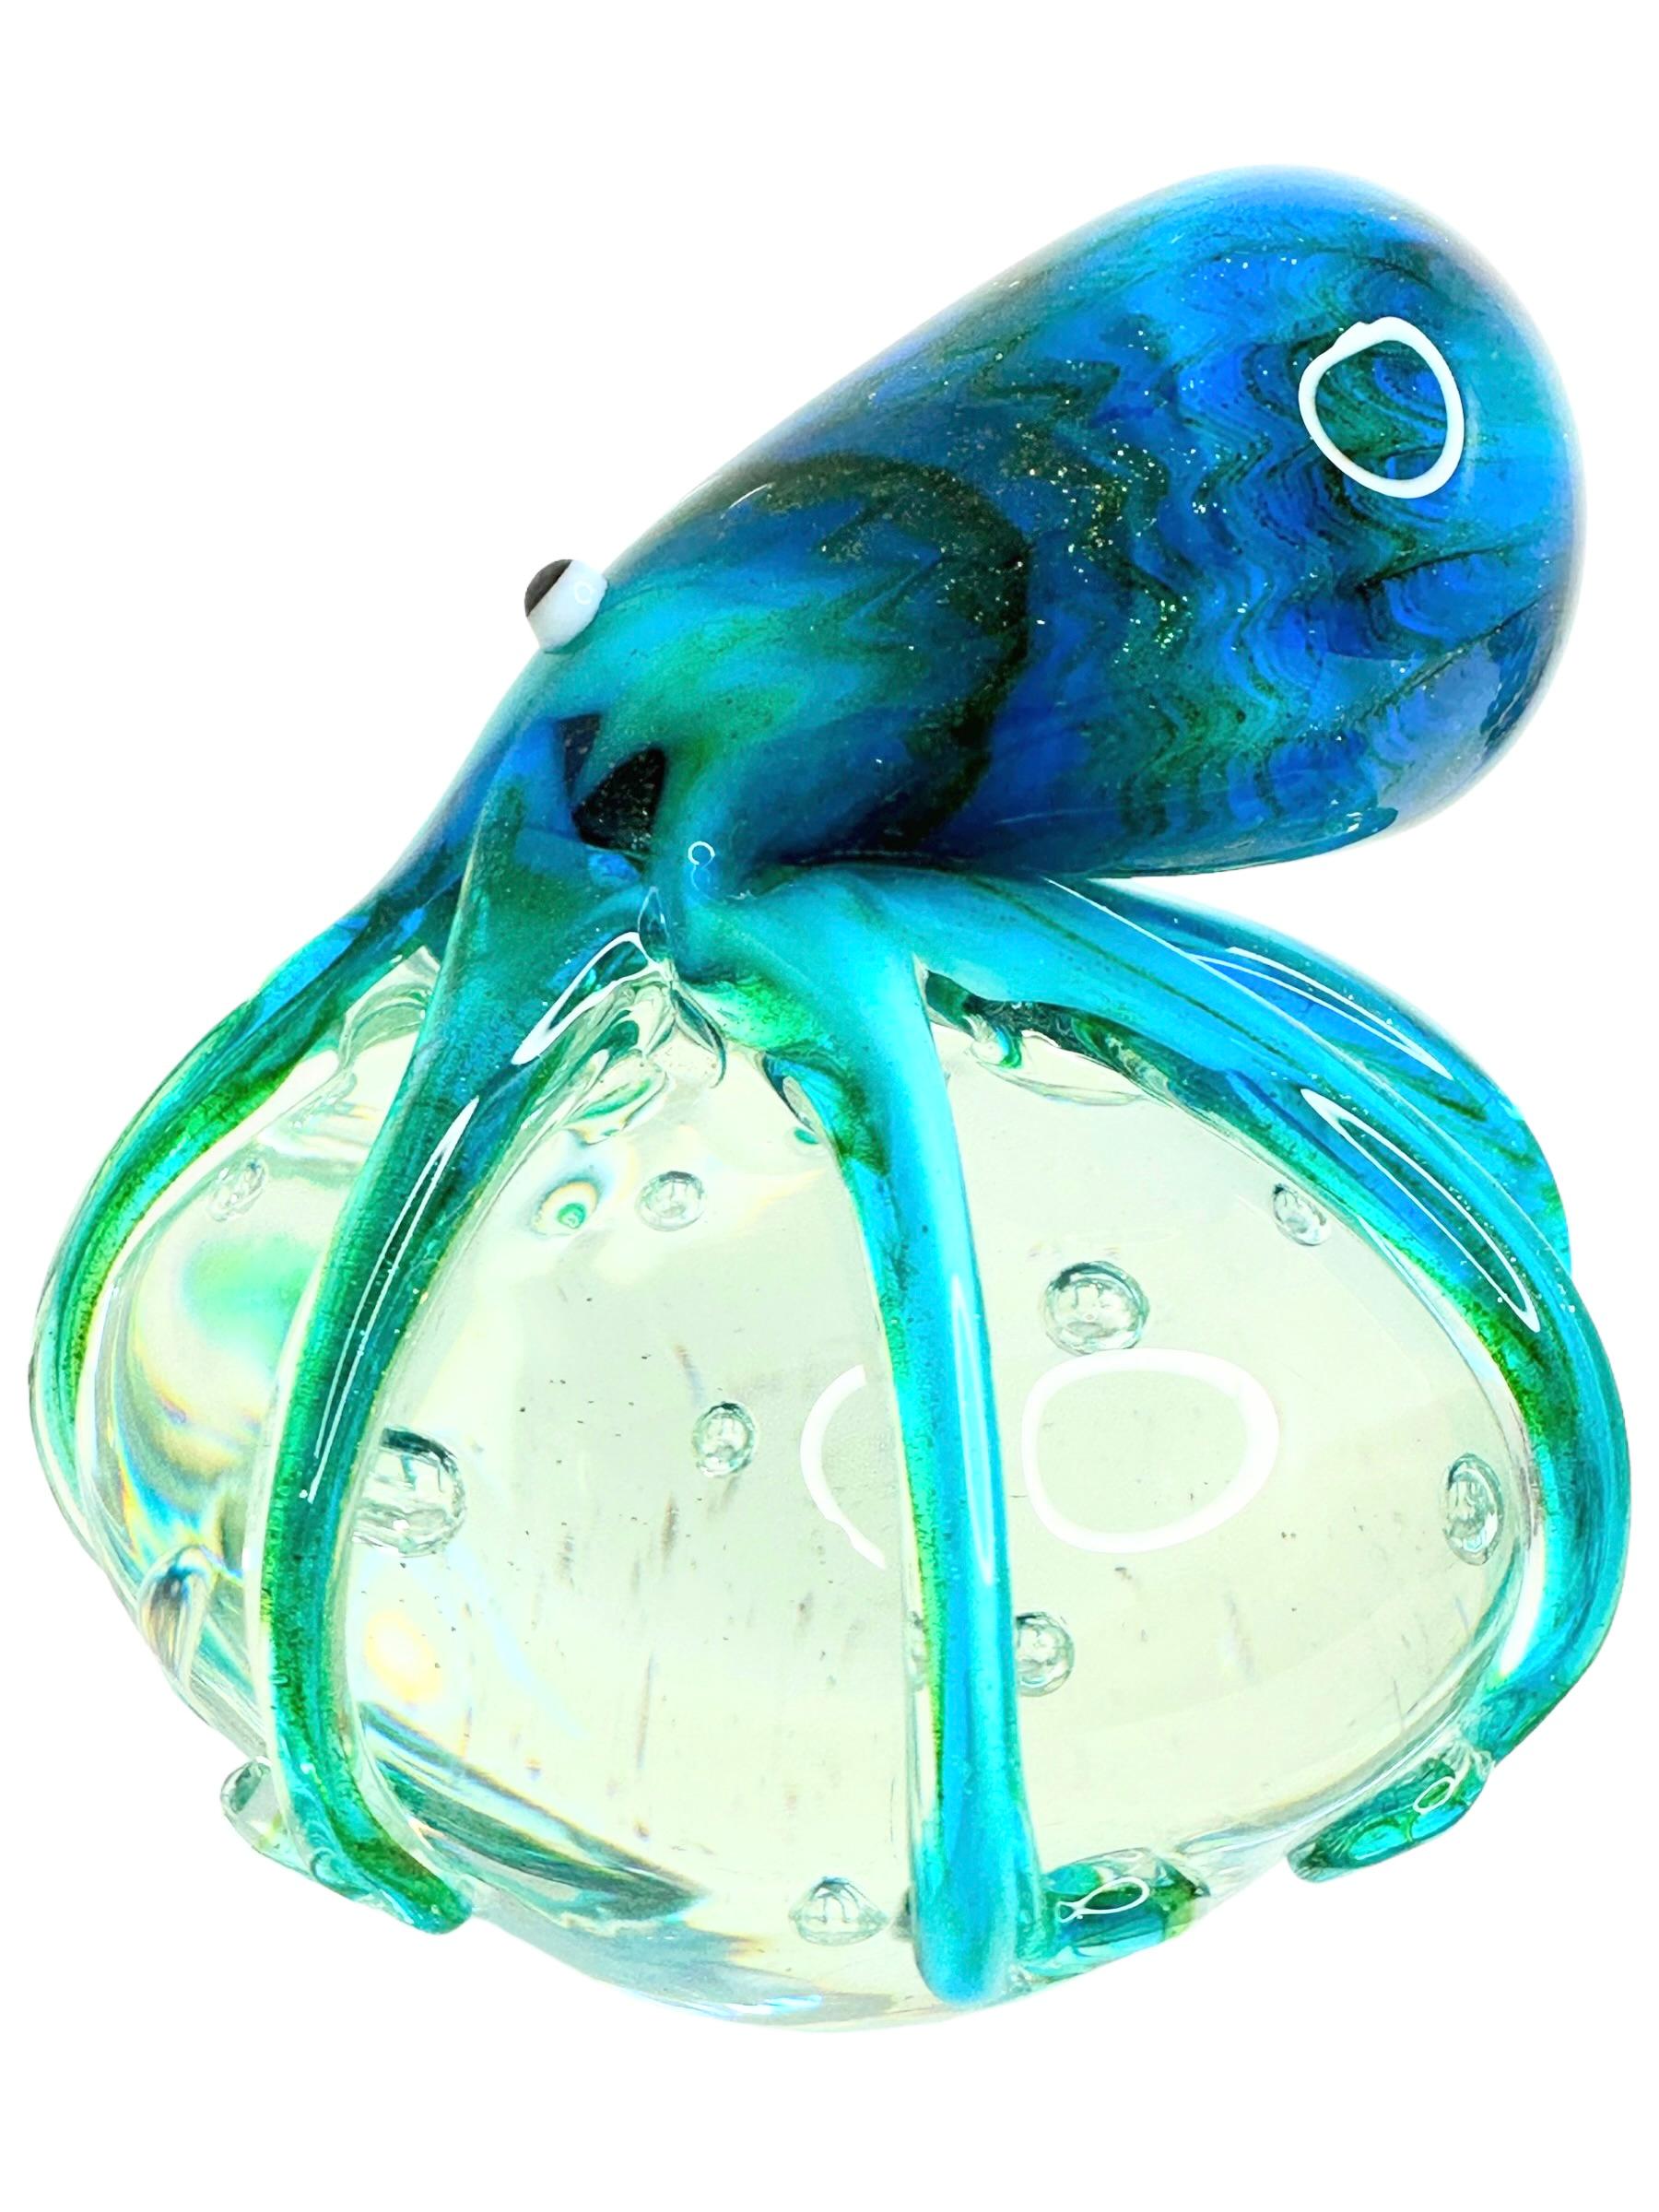 Schöne Murano mundgeblasen Aquarium italienische Kunst Glas Briefbeschwerer. Zeigt einen Riesenkraken, der auf einer Glasblase auf kontrollierten Luftblasen schwimmt. Die Farben sind verschiedene Blautöne, Türkis, Weiß, Schwarz und Klar. Eine schöne